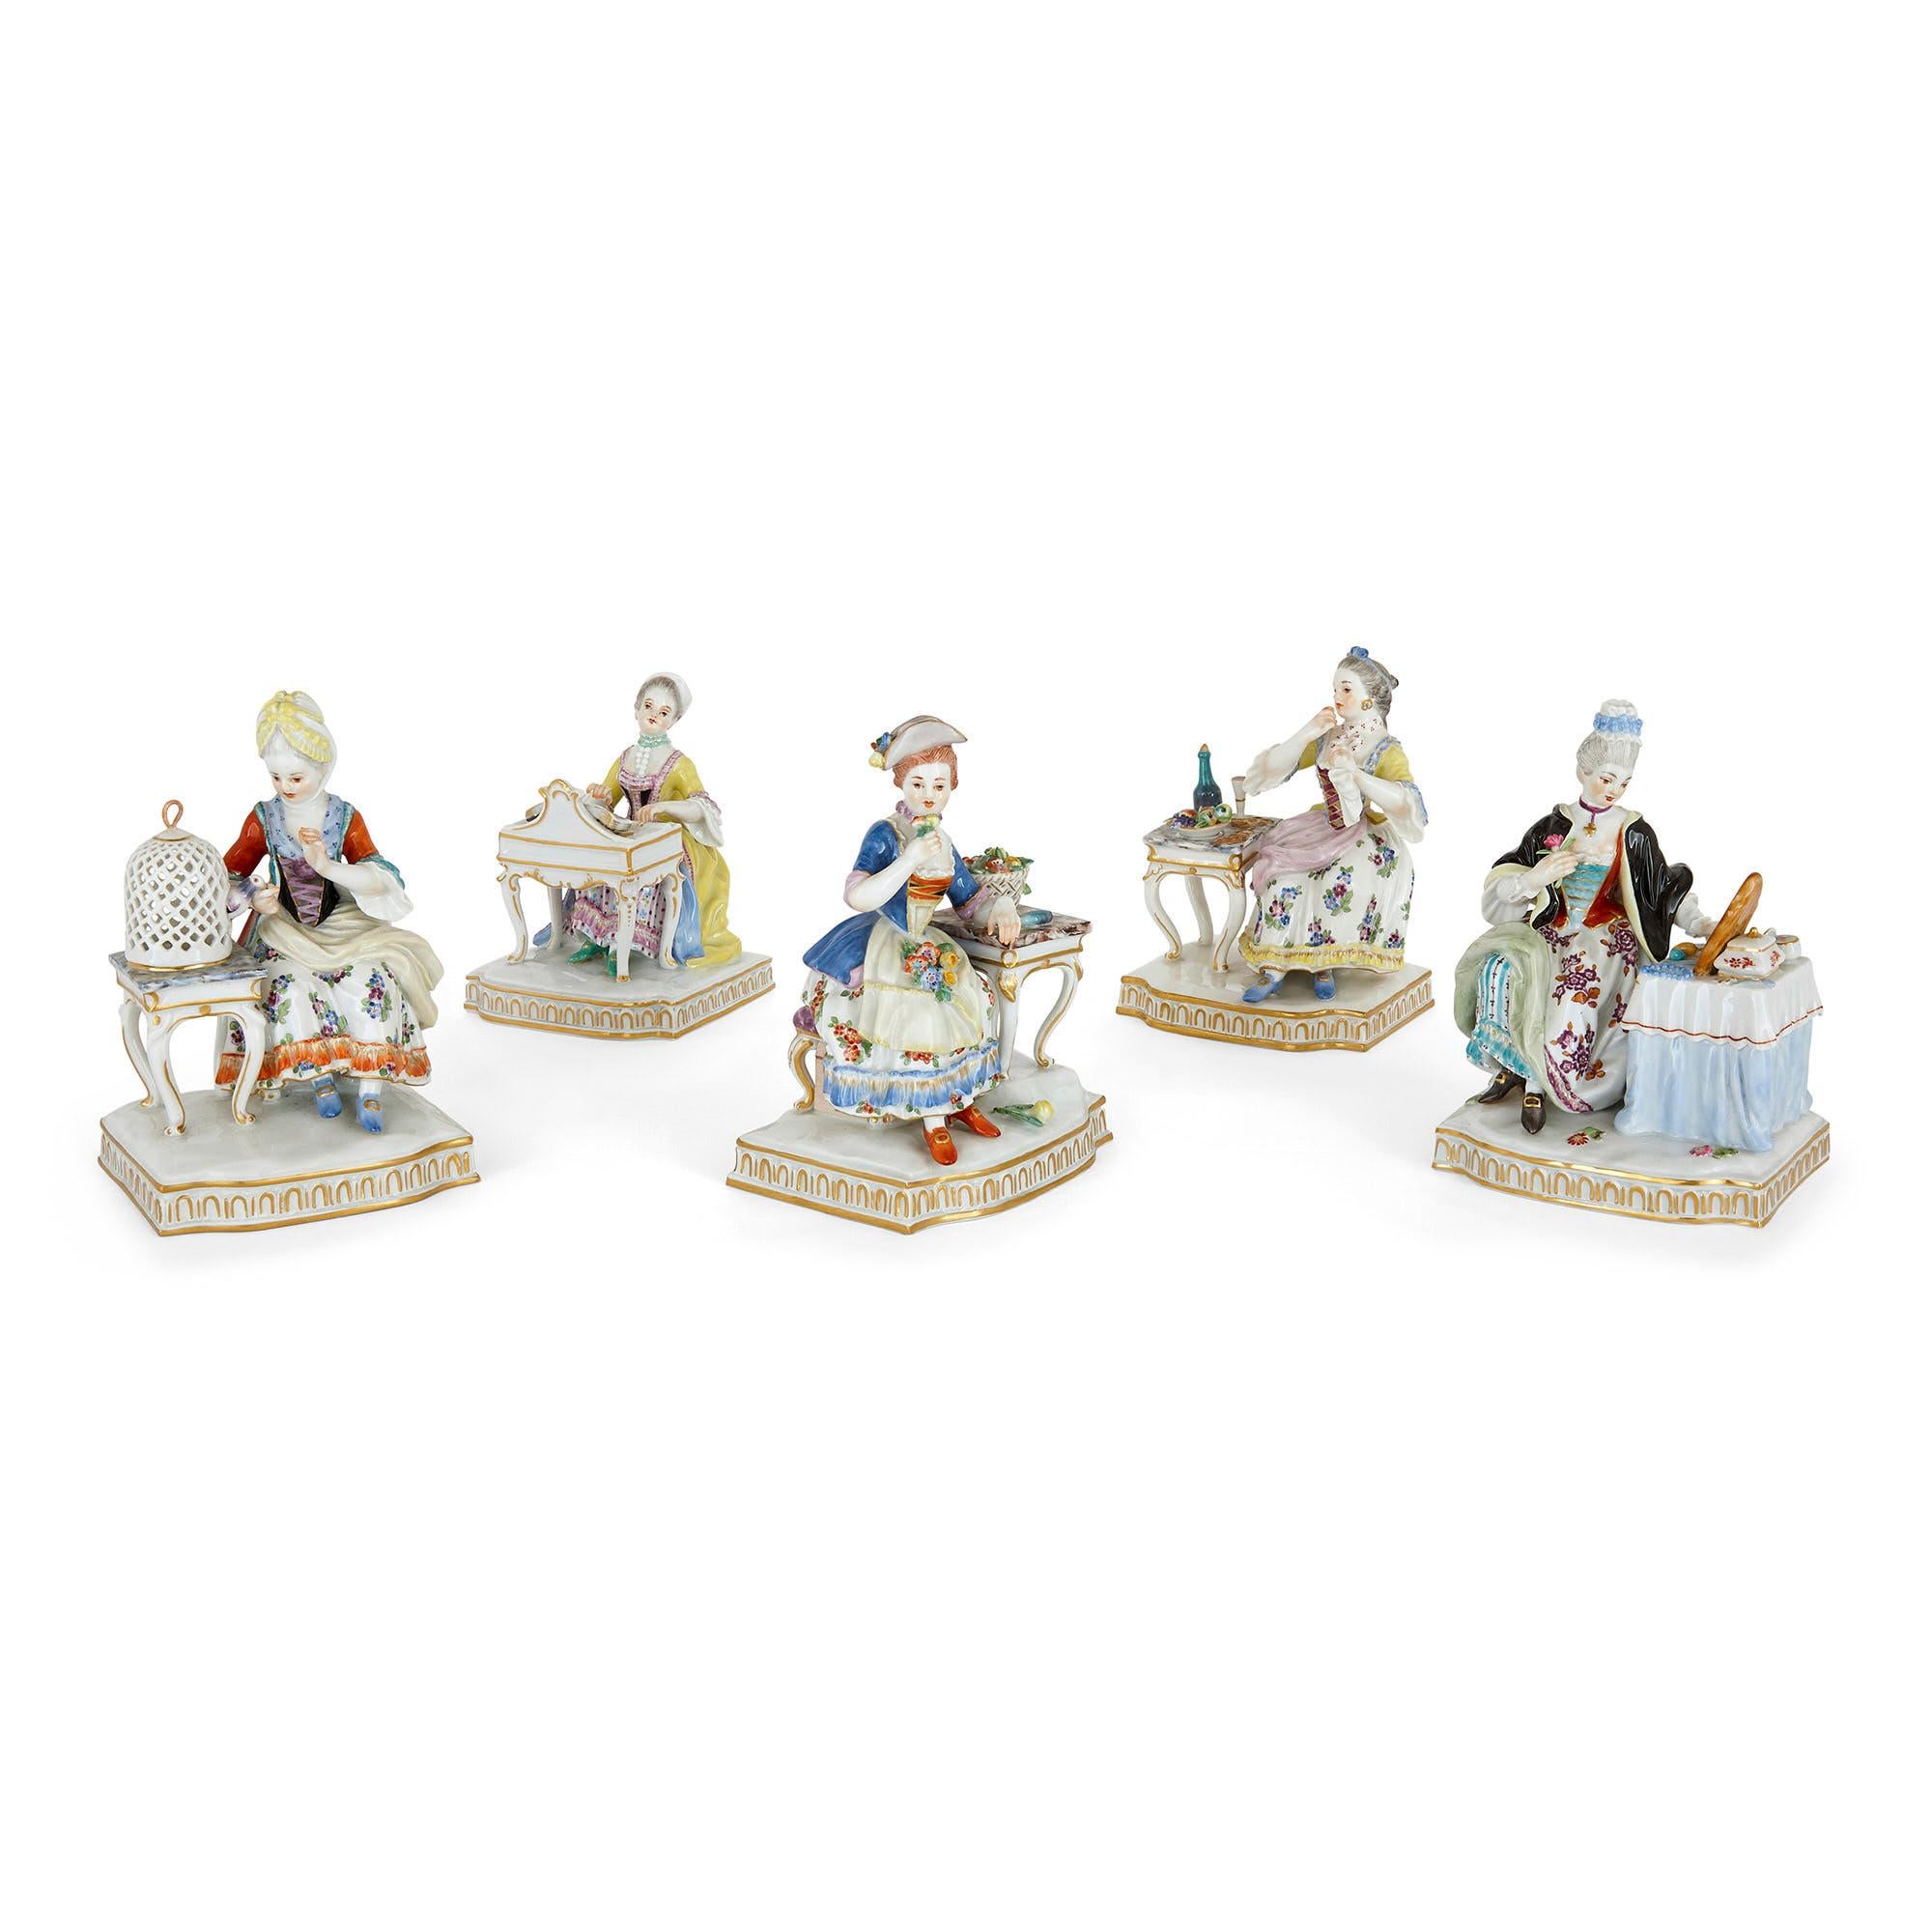 Ensemble de cinq sculptures allégoriques en porcelaine de Meissen
A.I.C., c. 1975
Mesures : Hauteur 15cm, largeur 10cm, profondeur 8.5cm

Les cinq figures de cet ensemble sont allégoriques des sens : la femme représentée dans chaque pièce